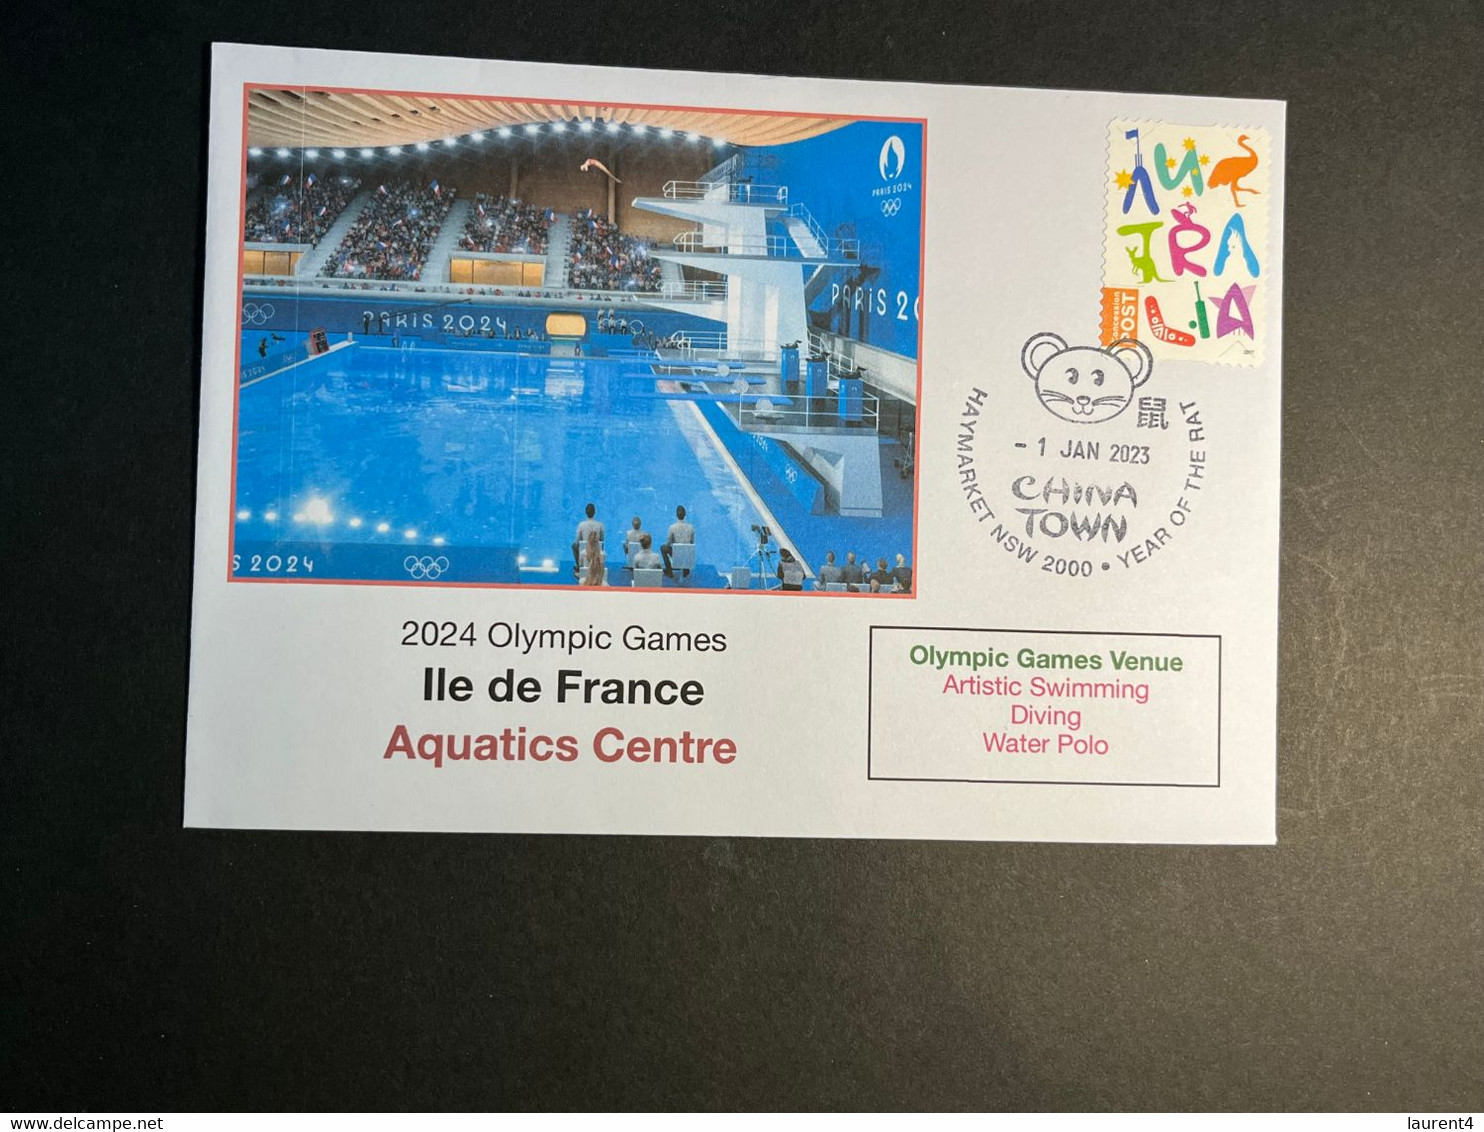 (3 N 2) 2024 France - Paris Olympic Games (1-1-2023) Location - Ile De France - Aquatic Centre (Swimming Diving W.Polo) - Eté 2024 : Paris